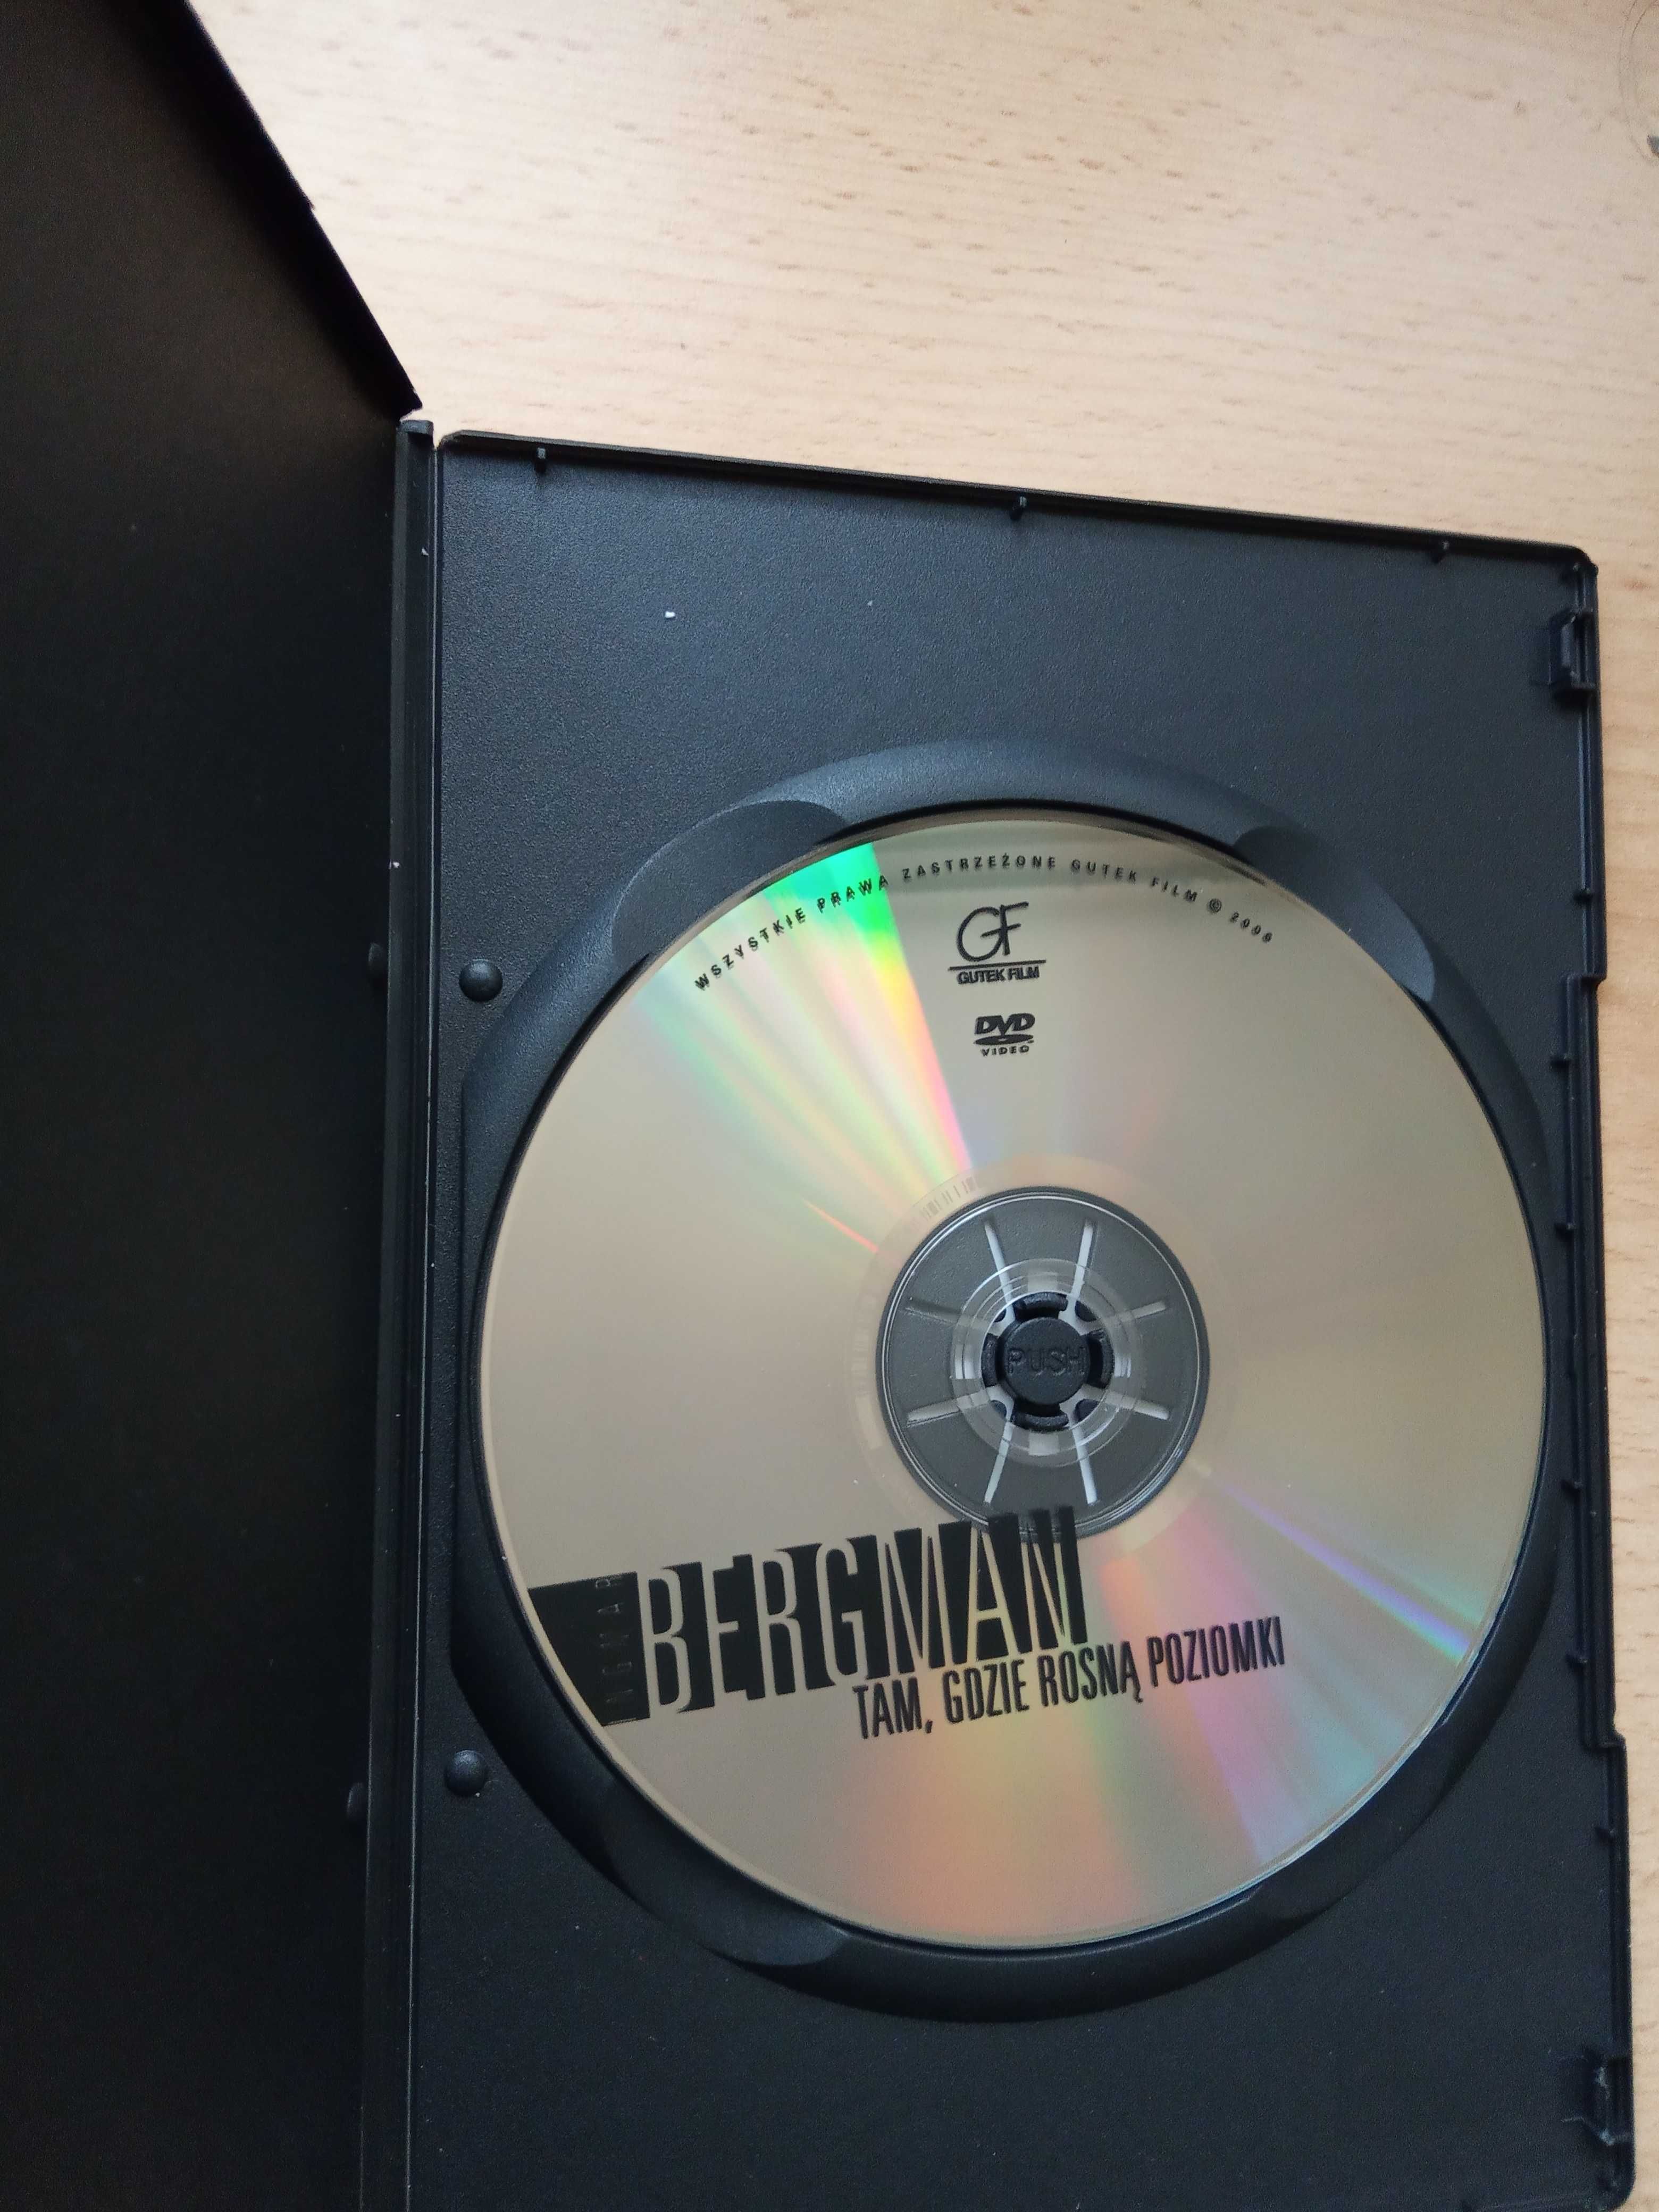 Tam, gdzie rosną poziomki, reż. Ingmar Bergman (DVD)